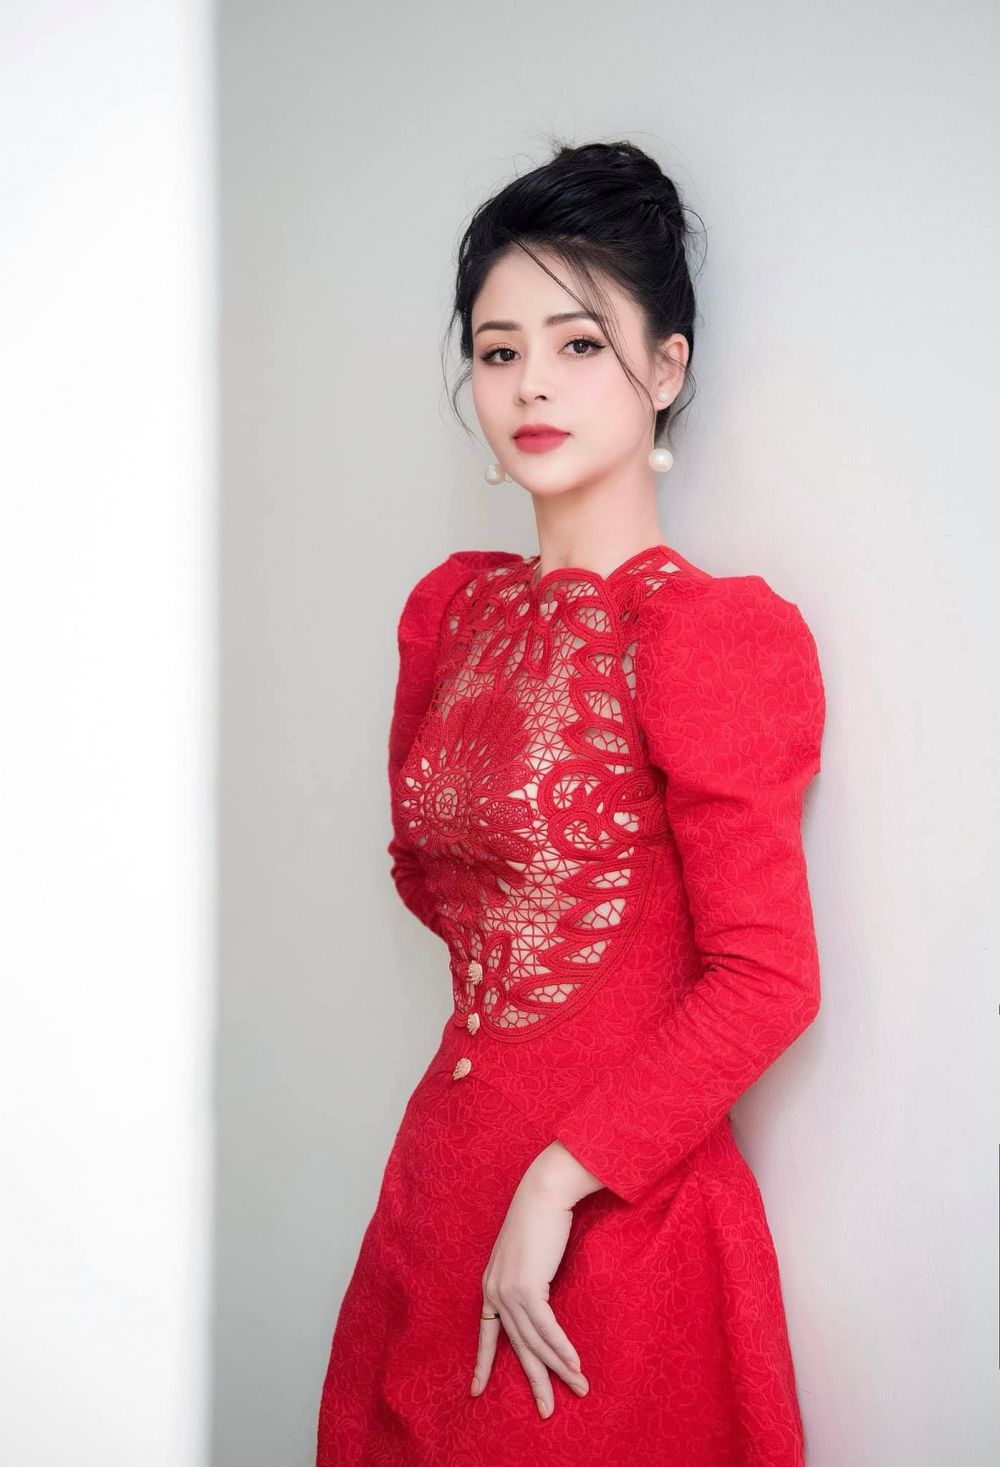 Phim Hướng dương ngược nắng: 'Cô Minh' - Lương Thu Trang ngoài đời sang chảnh cỡ nào?